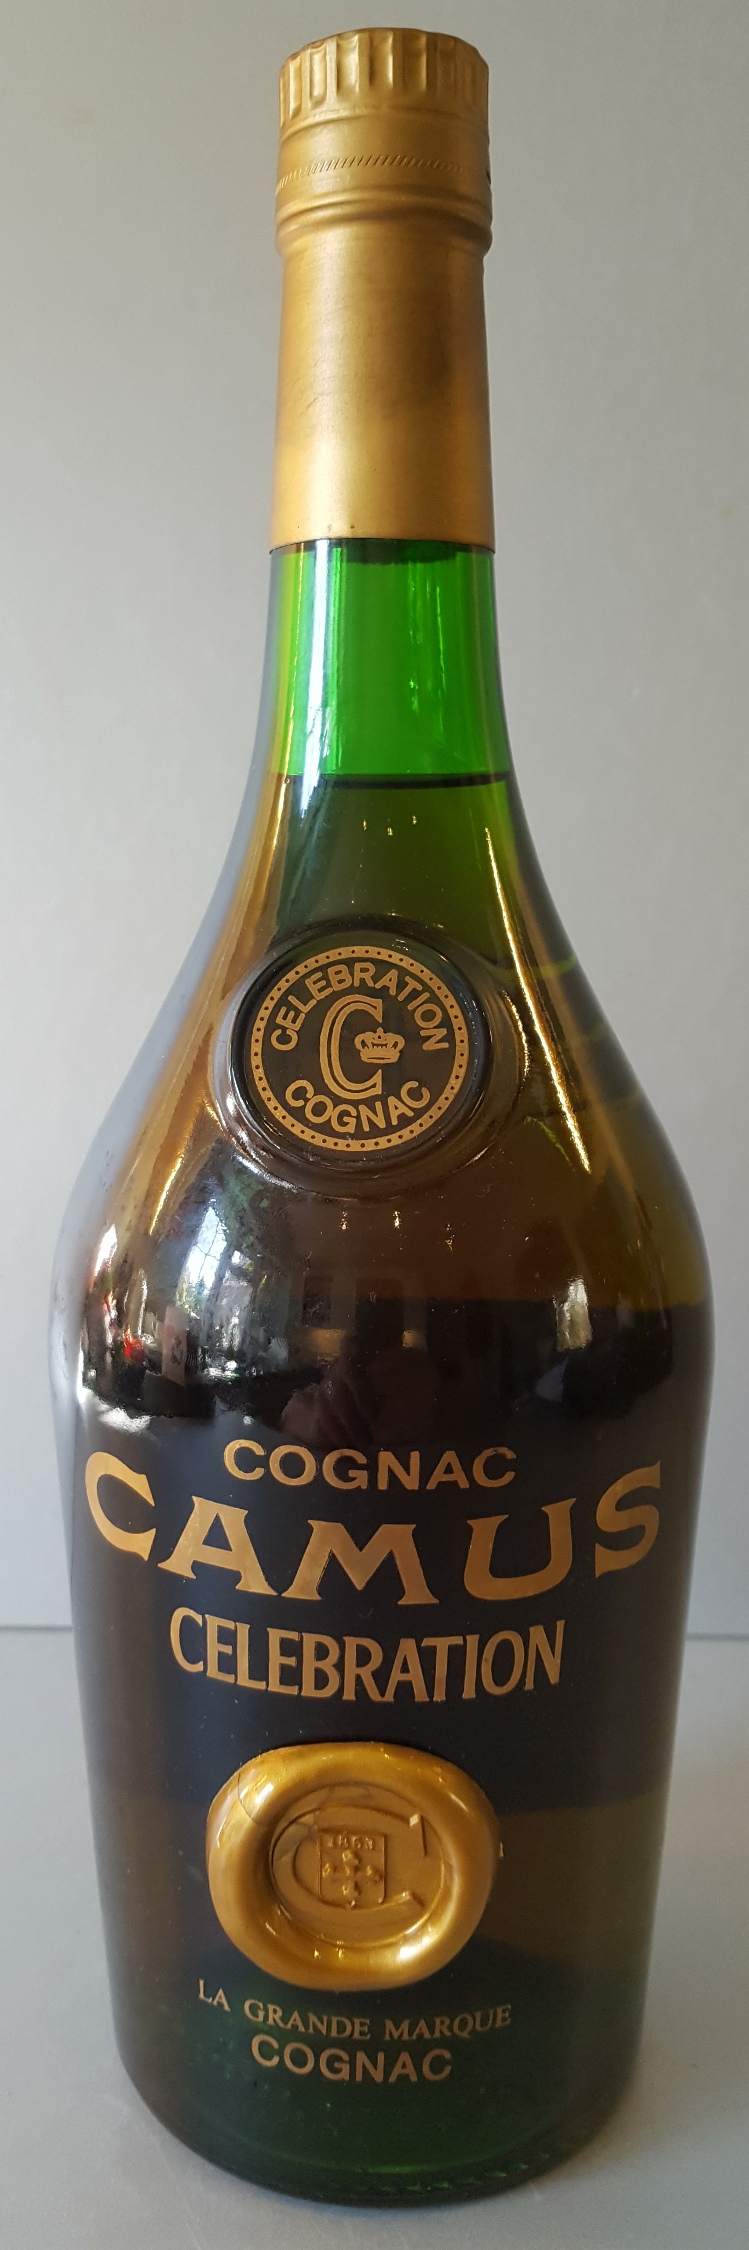 1 x Litre Bottle Vintage Cognac CAMUS Celebration La Grande Marque Cognac No. 060211 CM - Image 2 of 5